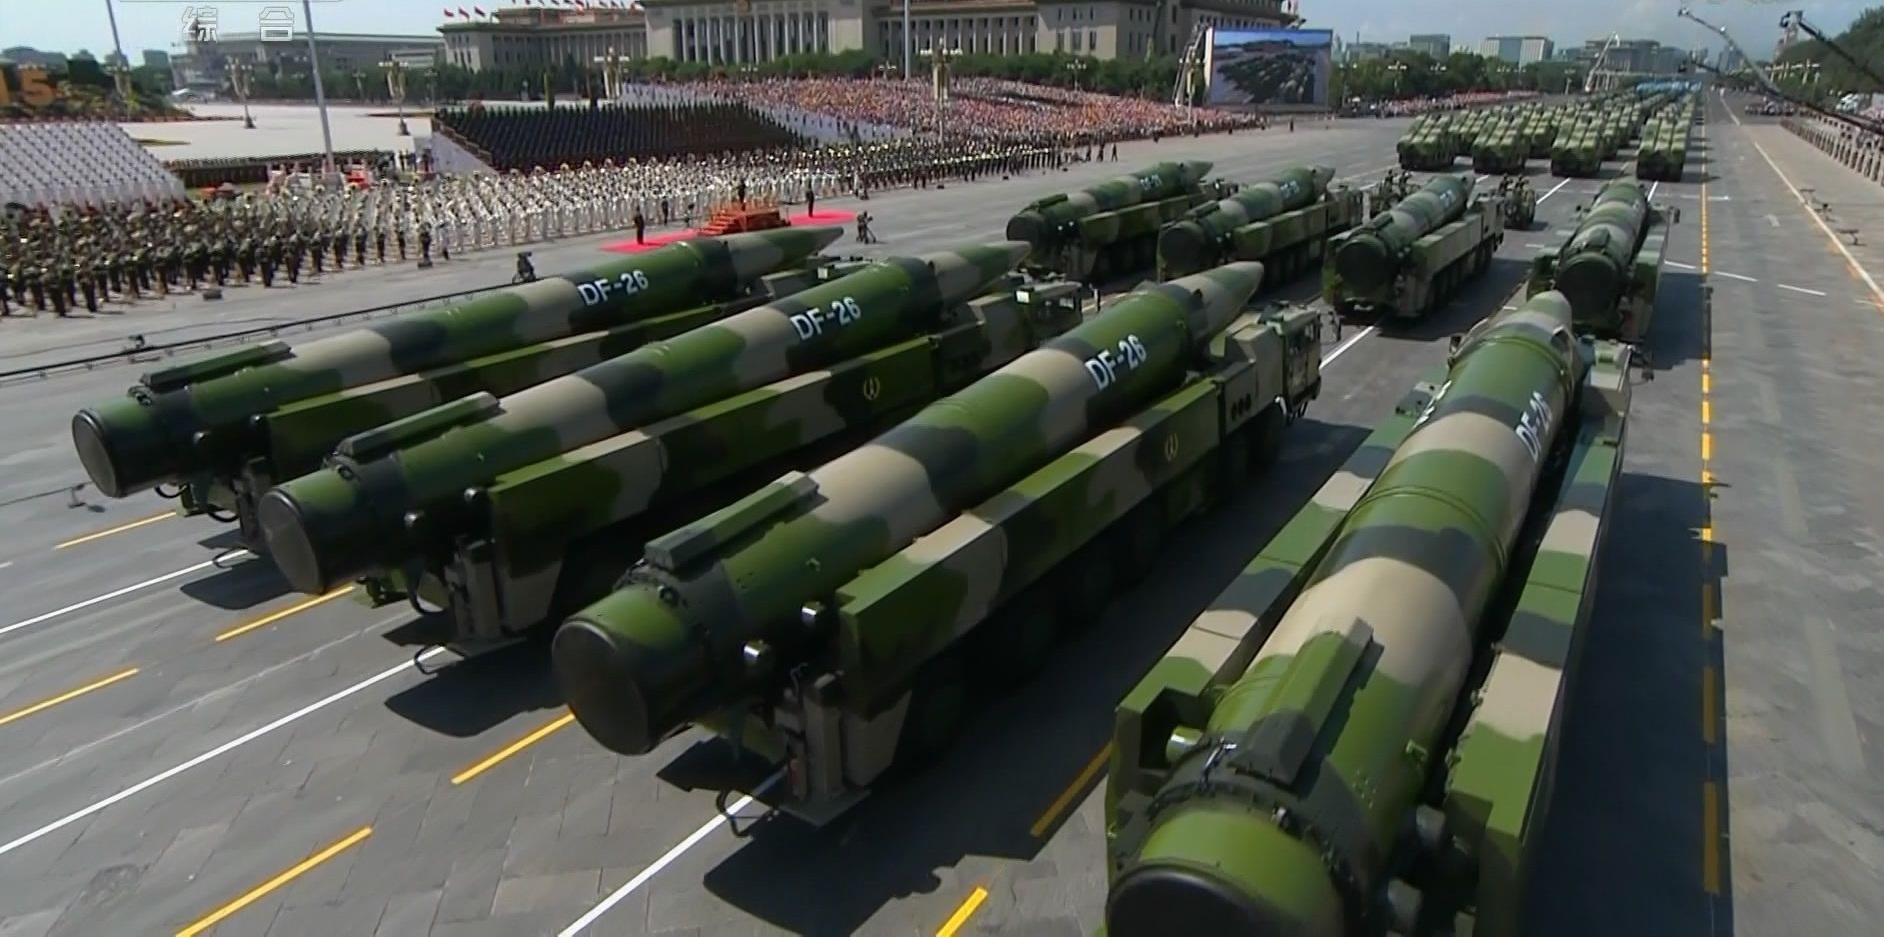 Америка требует ограничить ядерные силы России и Китая